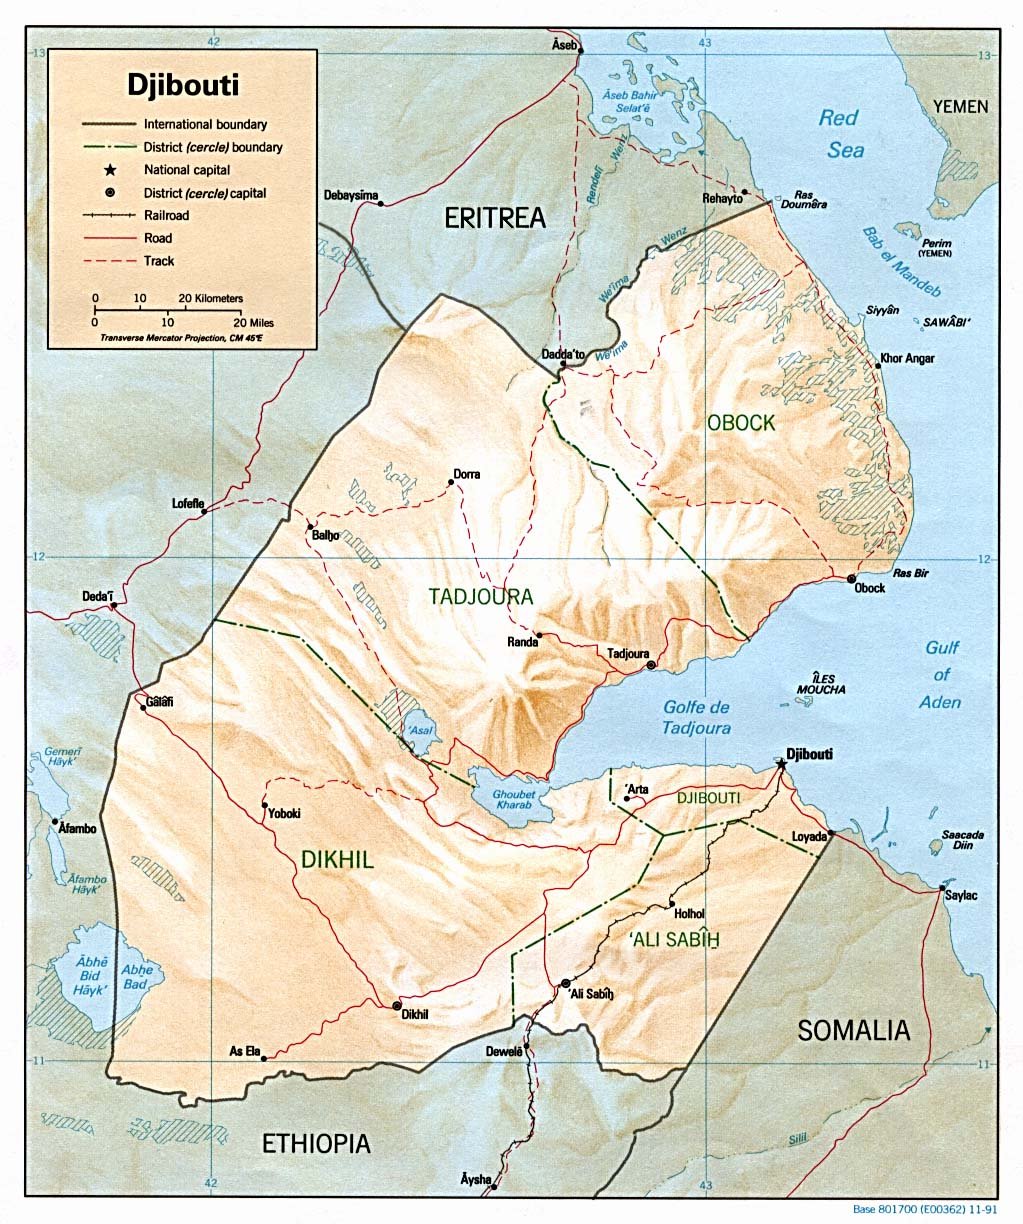 Djibouti (wikipedia)